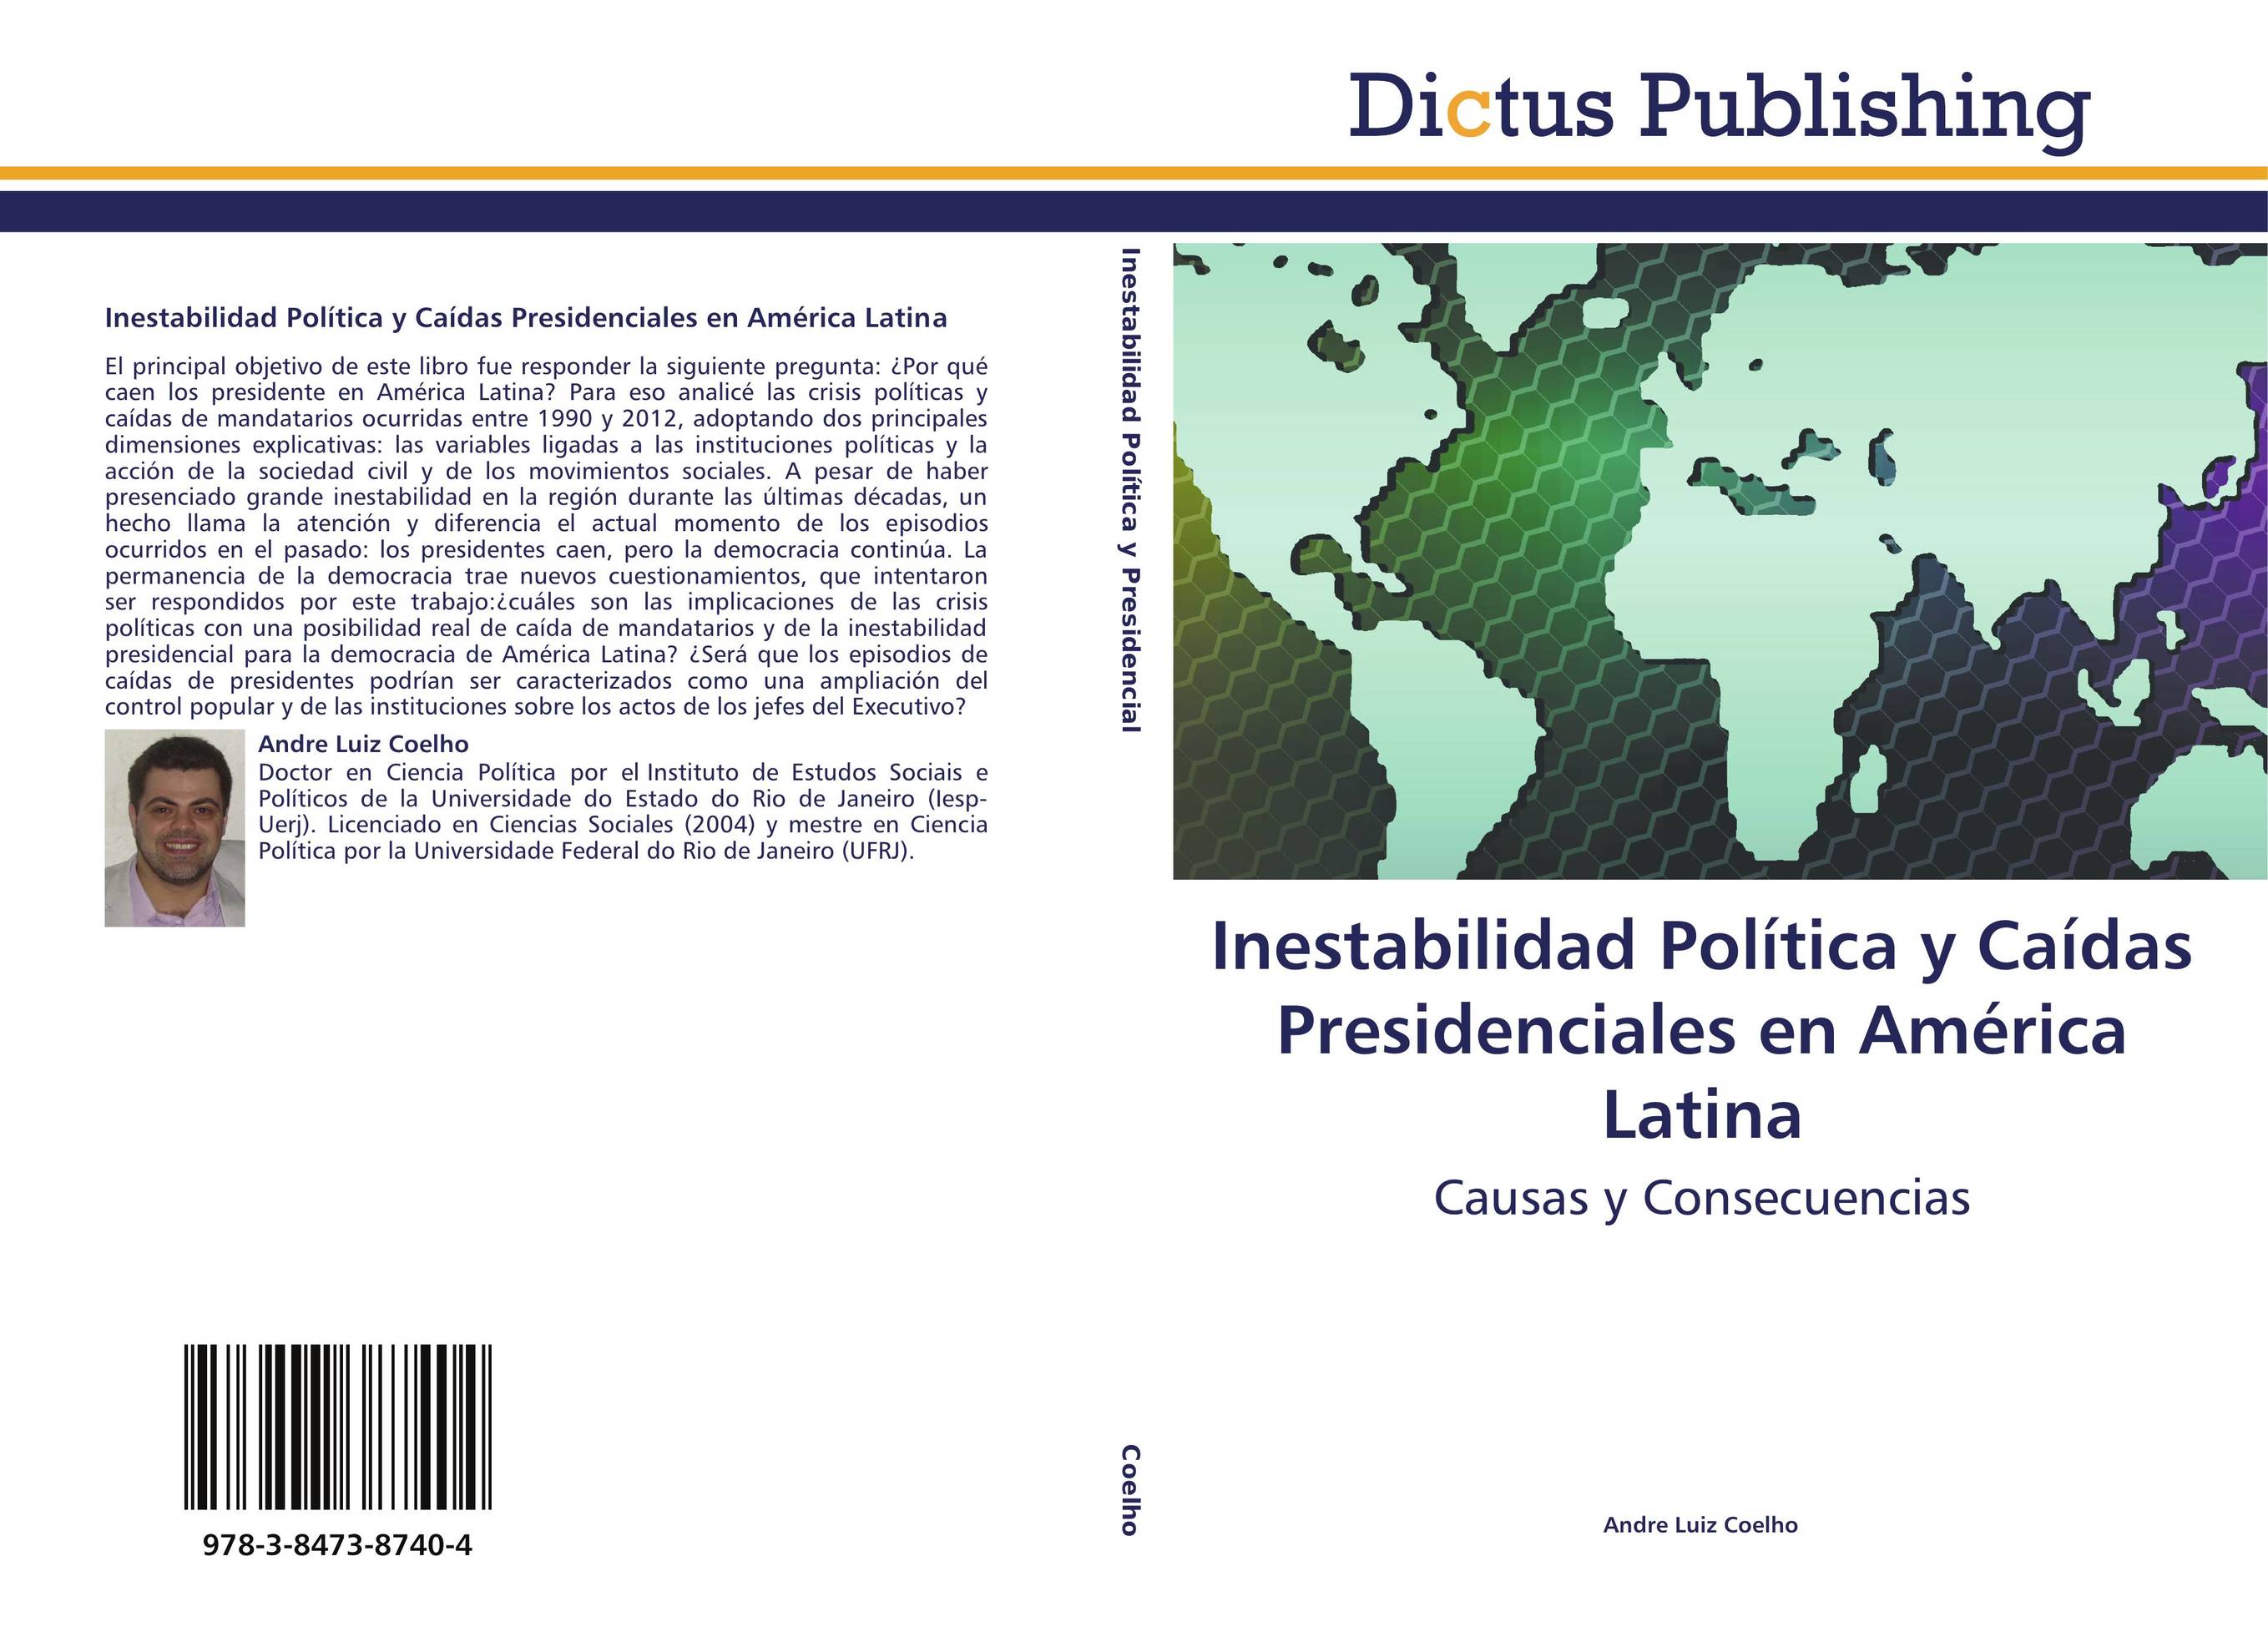 Inestabilidad Política y Caídas Presidenciales en América Latina